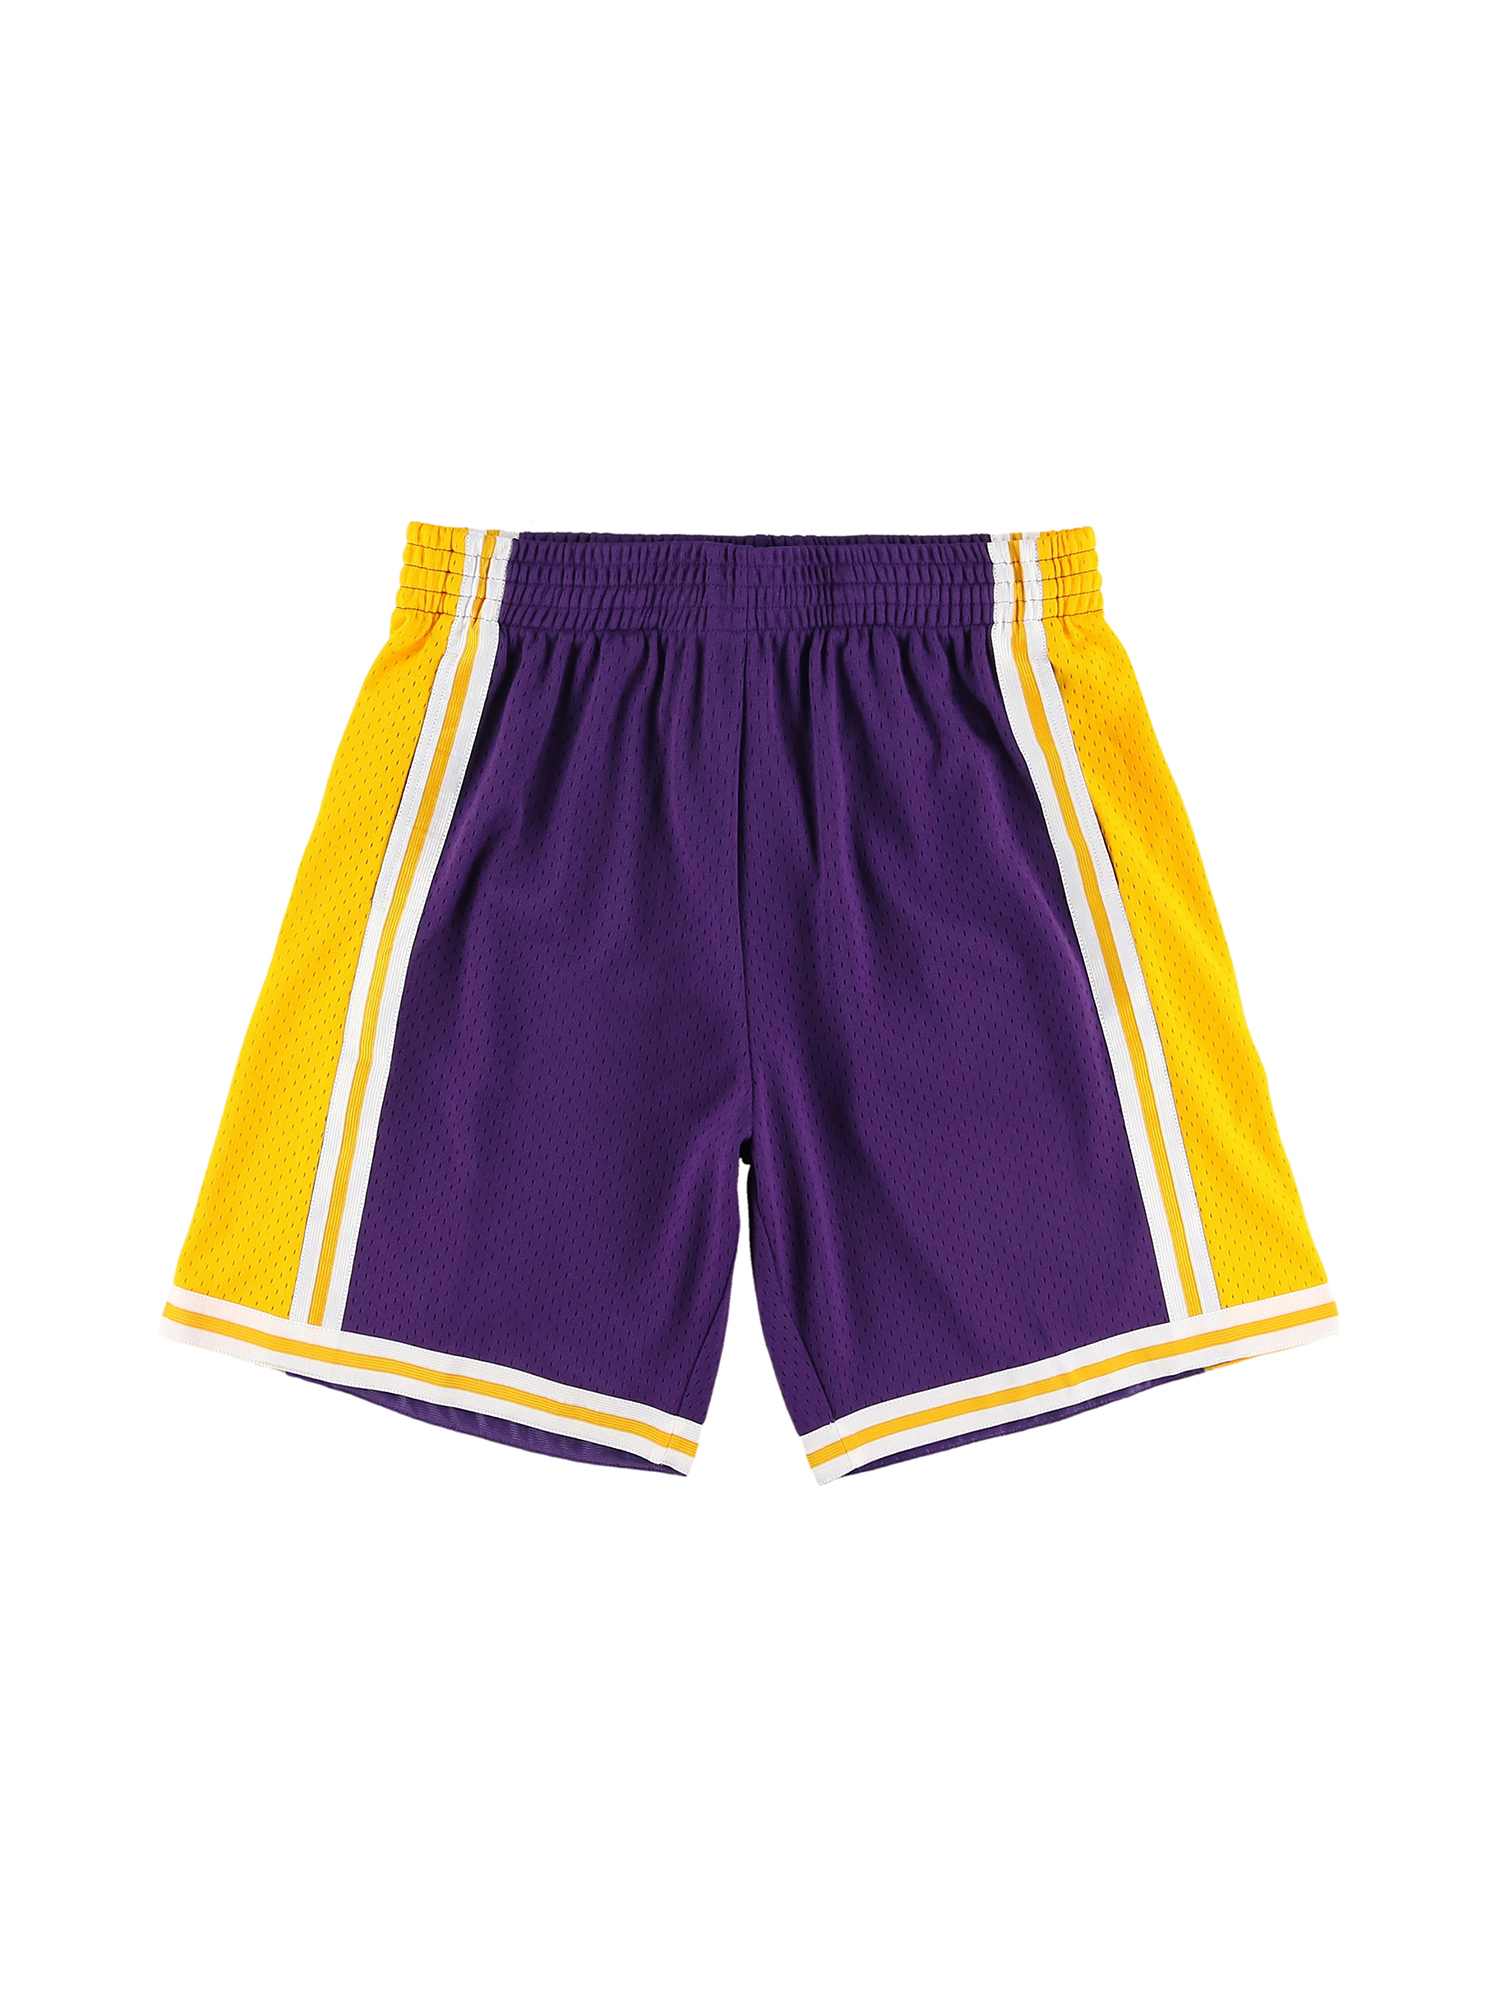 Mitchell＆Ness スウィングマンショーツ Lakers ポケットあり